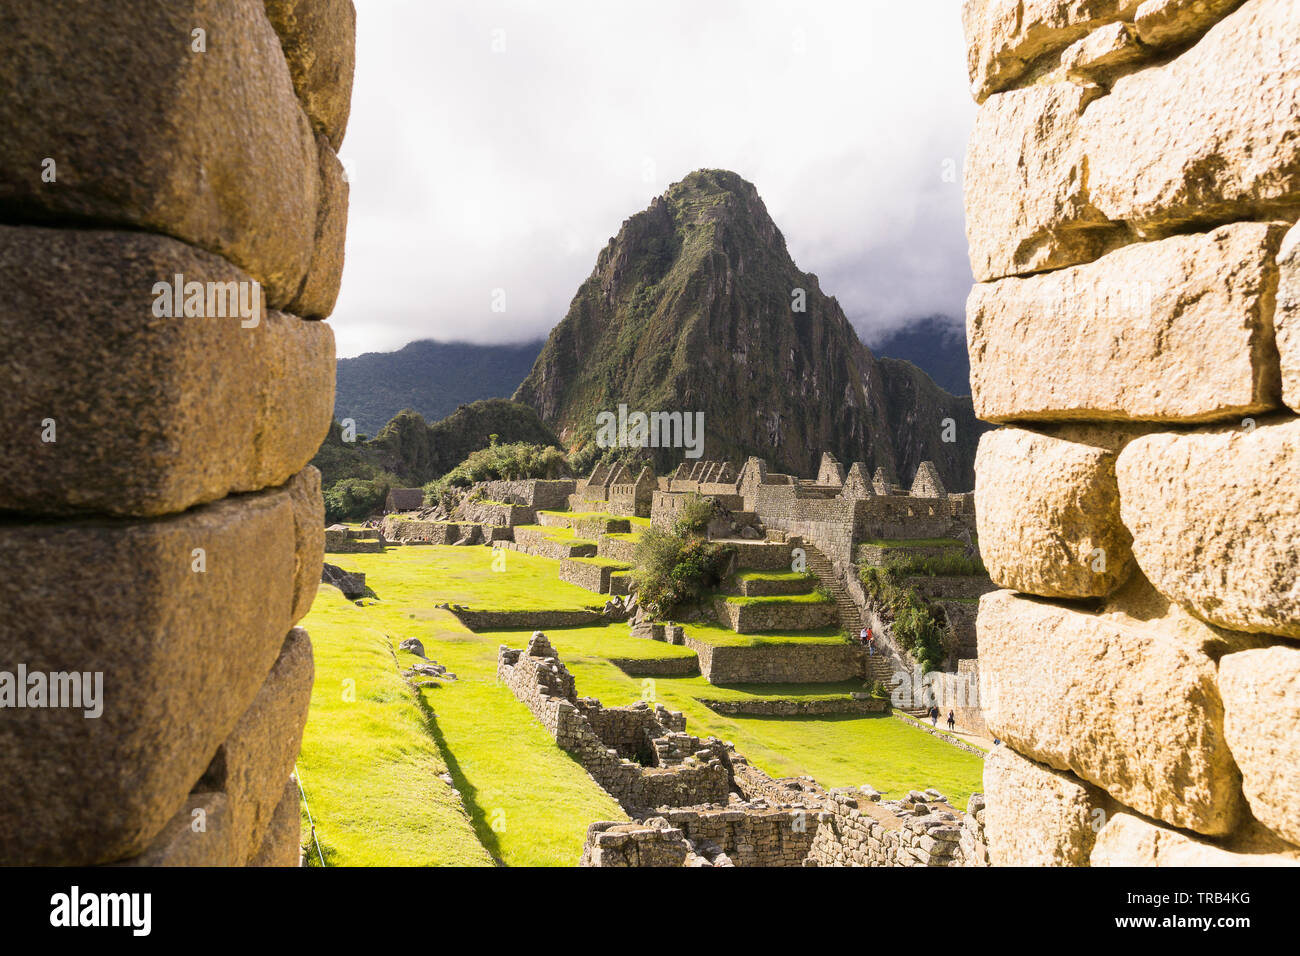 Machu Picchu Peru - Blick auf den Huayna Picchu (Berg Wayna Pikchu) Zitadelle von Machu Picchu in Peru. Stockfoto